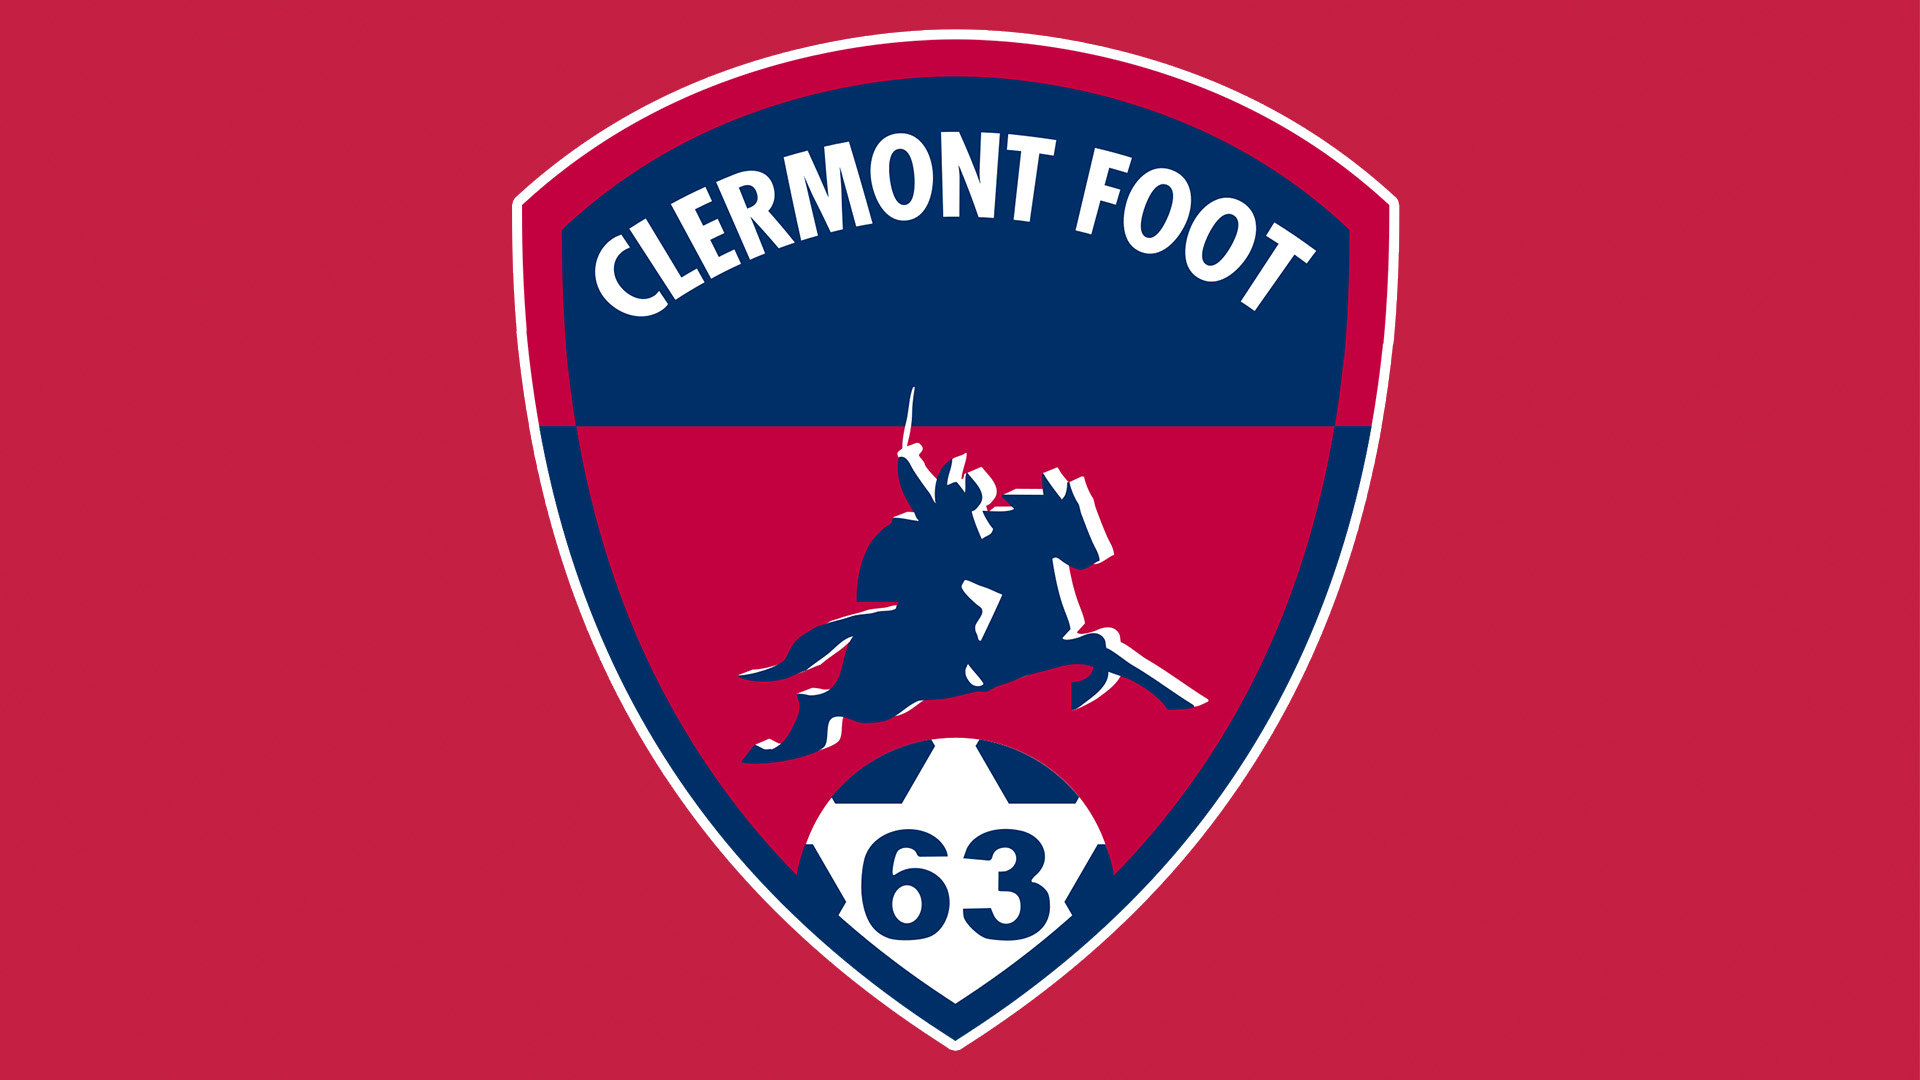 Clermont Foot 63 vs FCG Bordeaux